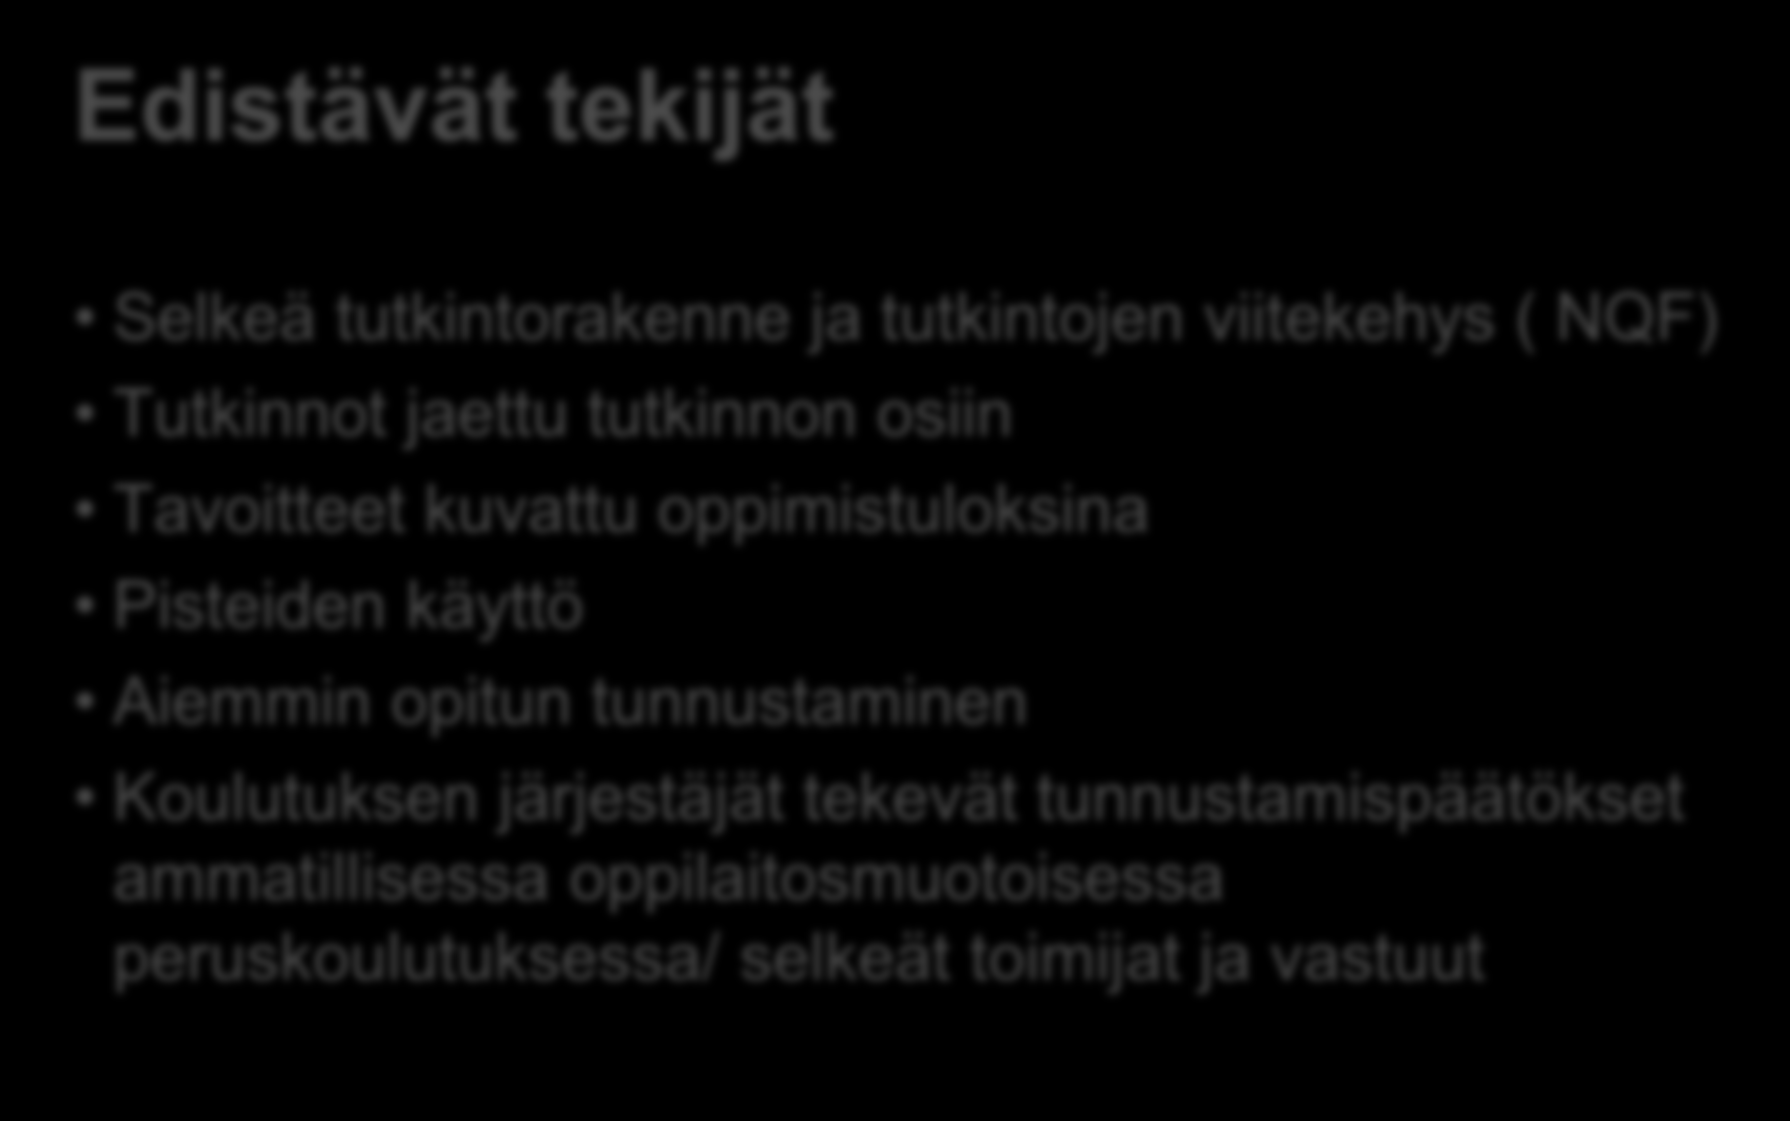 ECVETin käyttöönotto Suomessa Edistävät tekijät Selkeä tutkintorakenne ja tutkintojen viitekehys ( NQF) Tutkinnot jaettu tutkinnon osiin Tavoitteet kuvattu oppimistuloksina